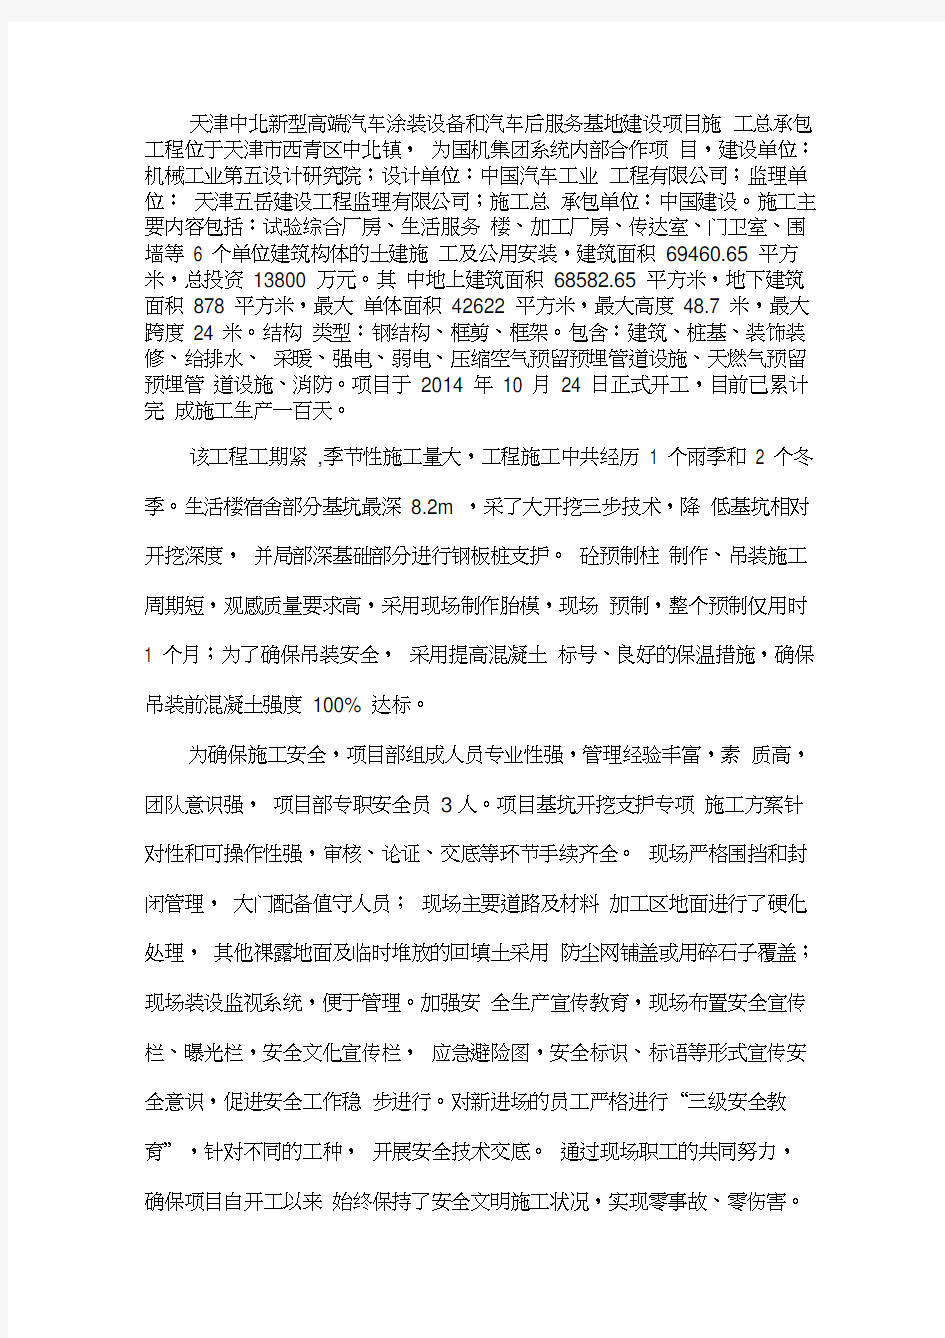 国机集团副总裁曾祥东一行莅临中国建设天津中北项目施工总承包工程检查指导安全生产工作